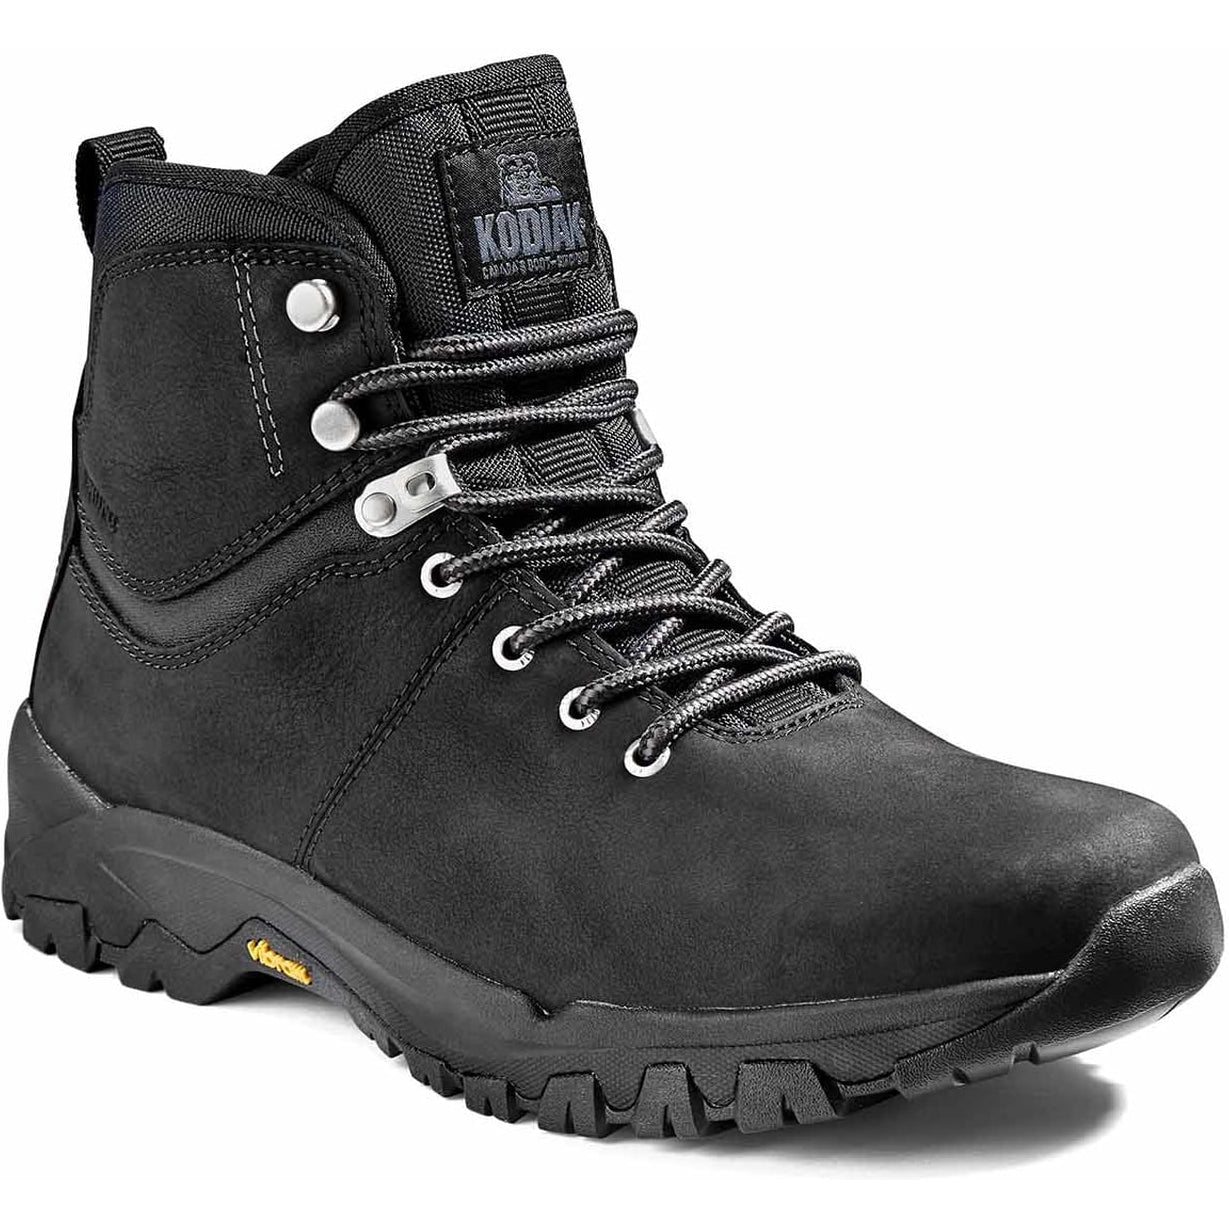 Kodiak Men's Comox Soft Toe Waterproof Lace Up Outdoor Boot -Black- 4TE2BK 7 / Medium / Black - Overlook Boots